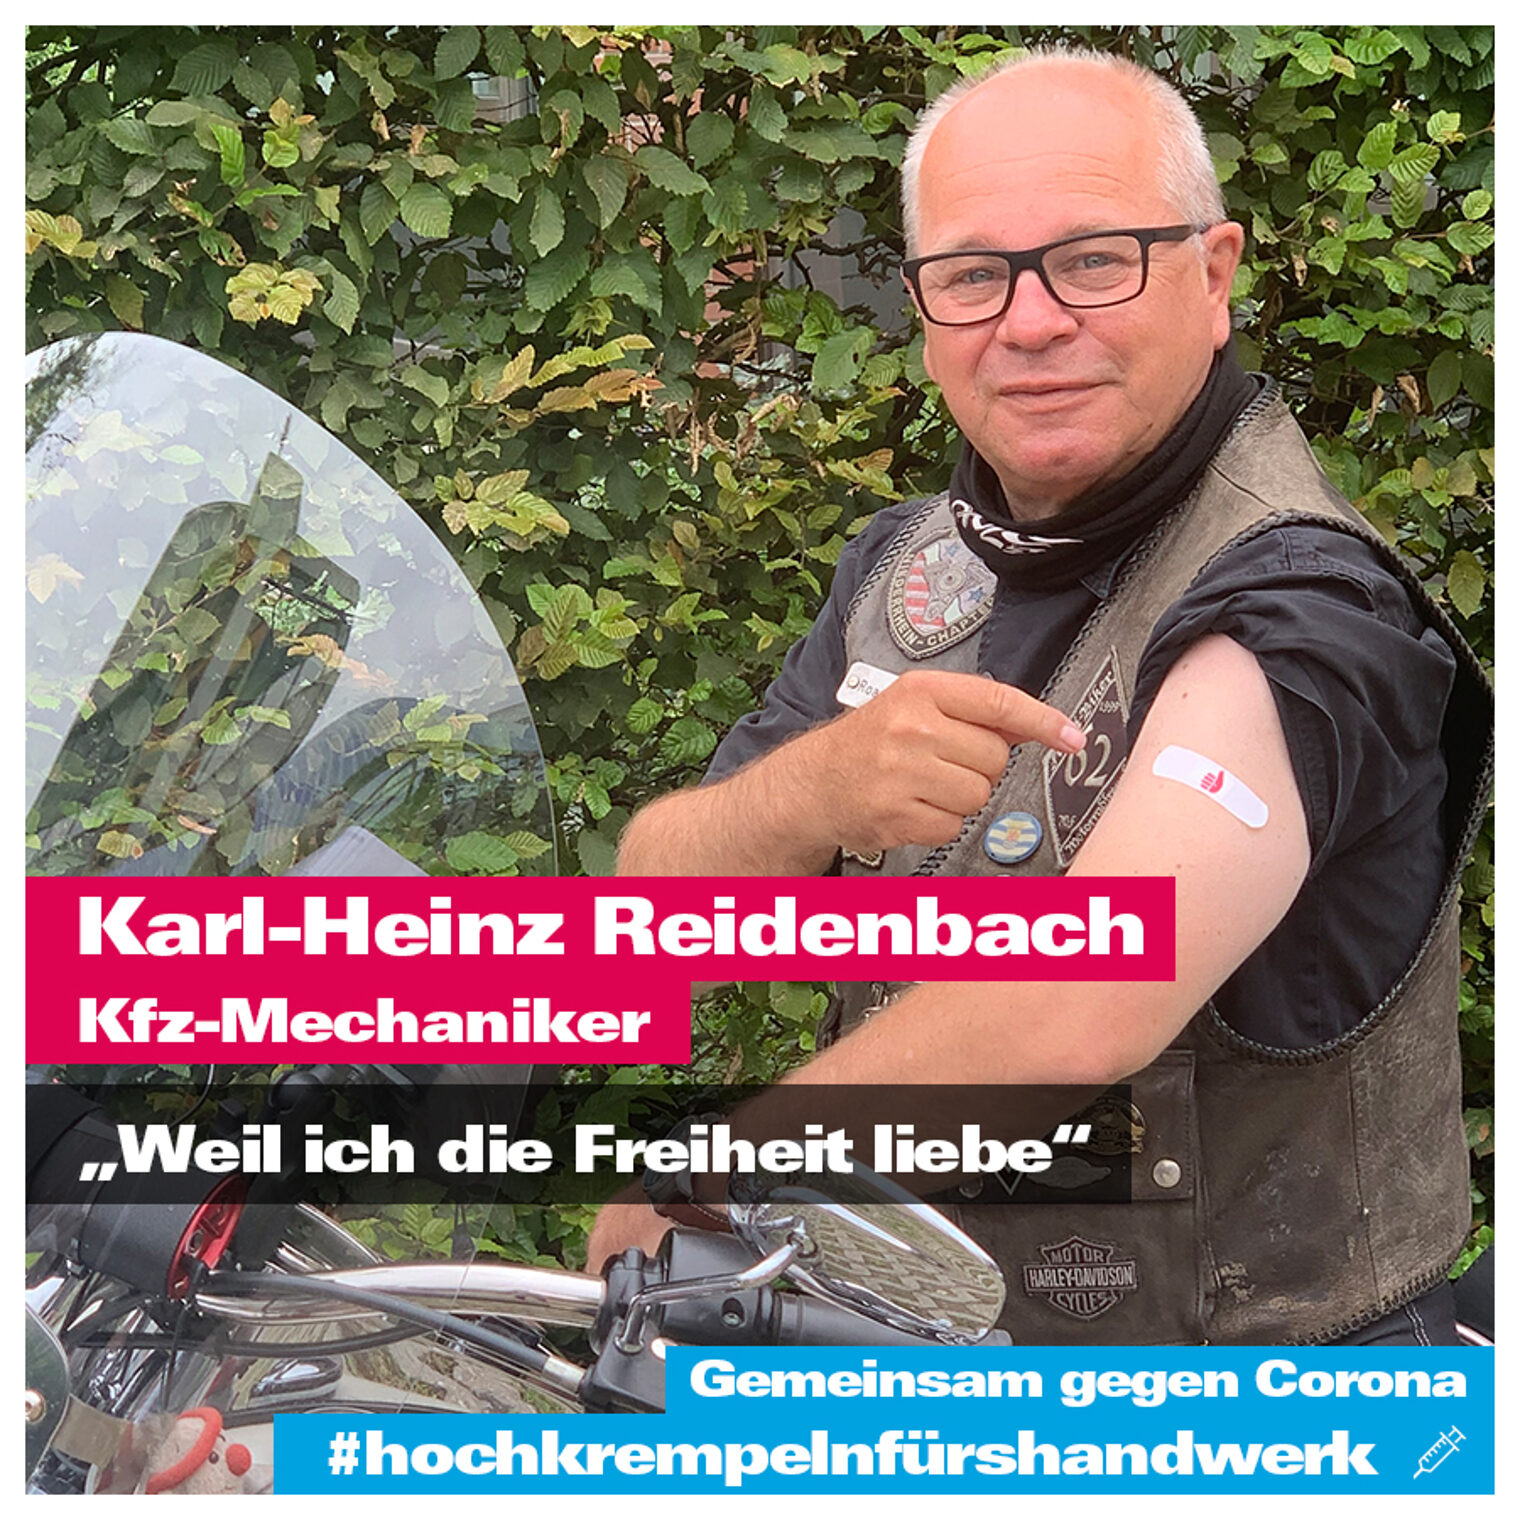 Karl-Heinz Reidenbach